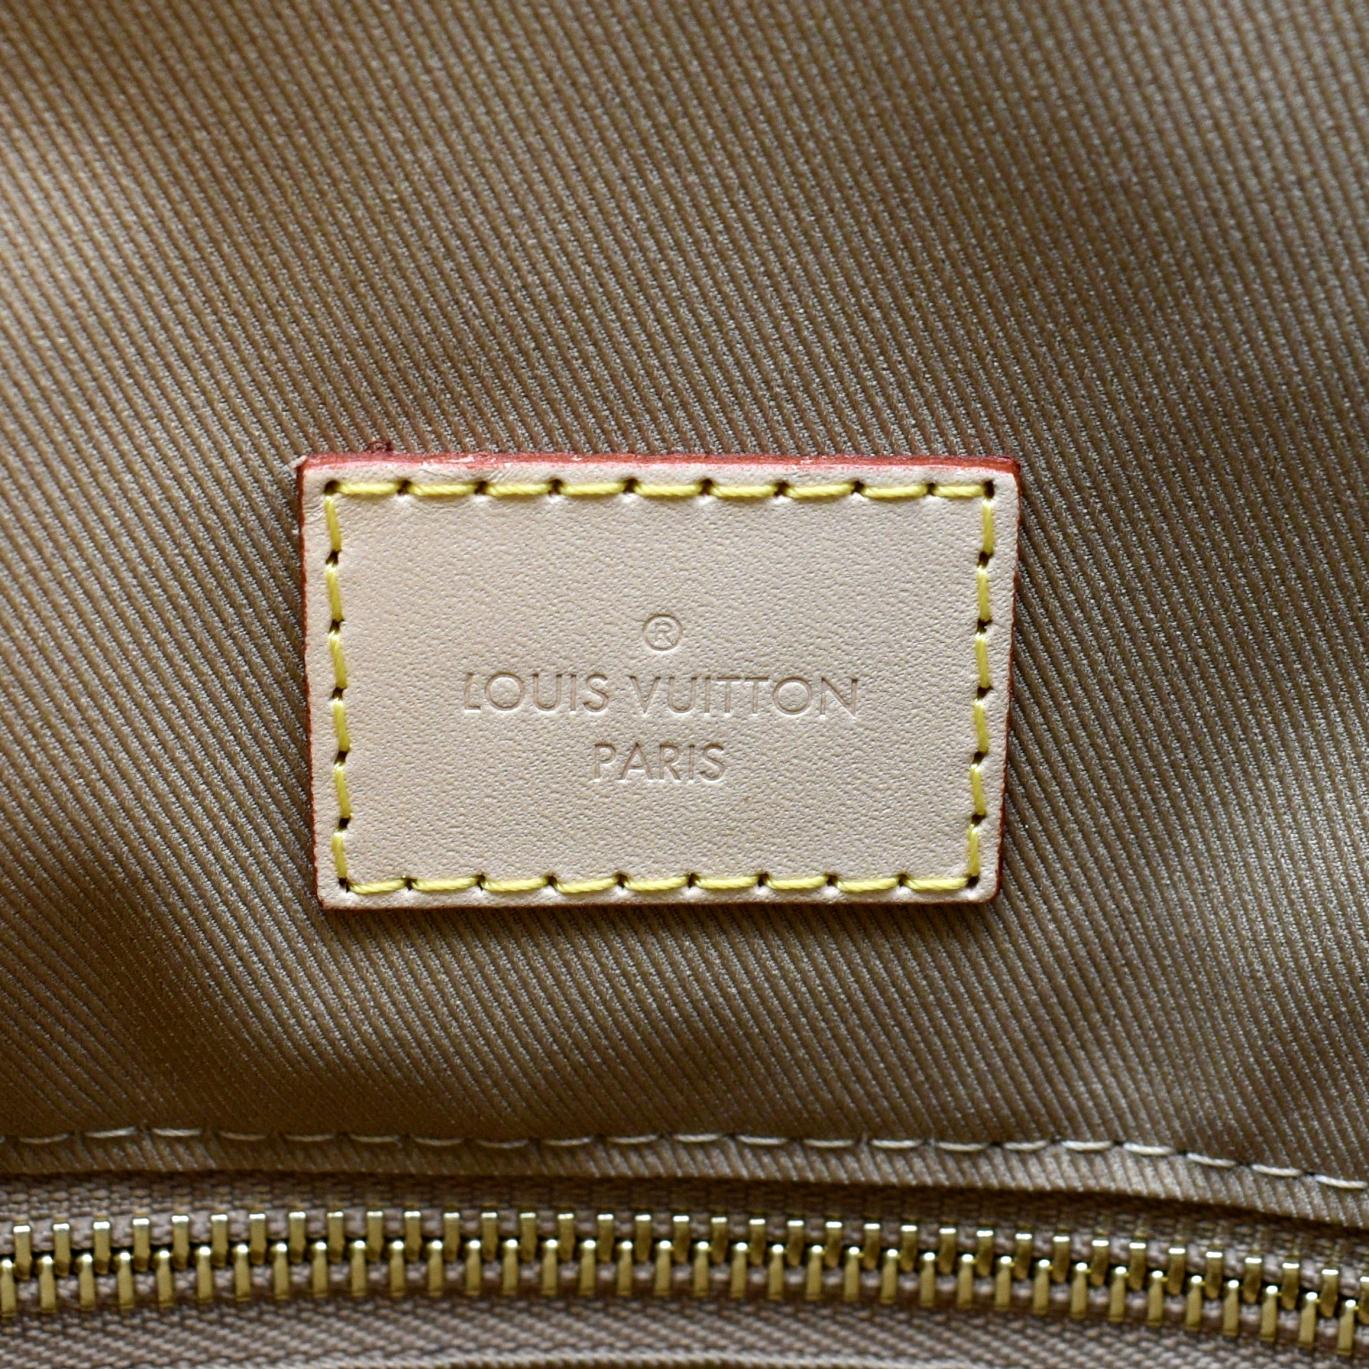 Louis Vuitton Monogram Graceful MM - Capsule Auctions